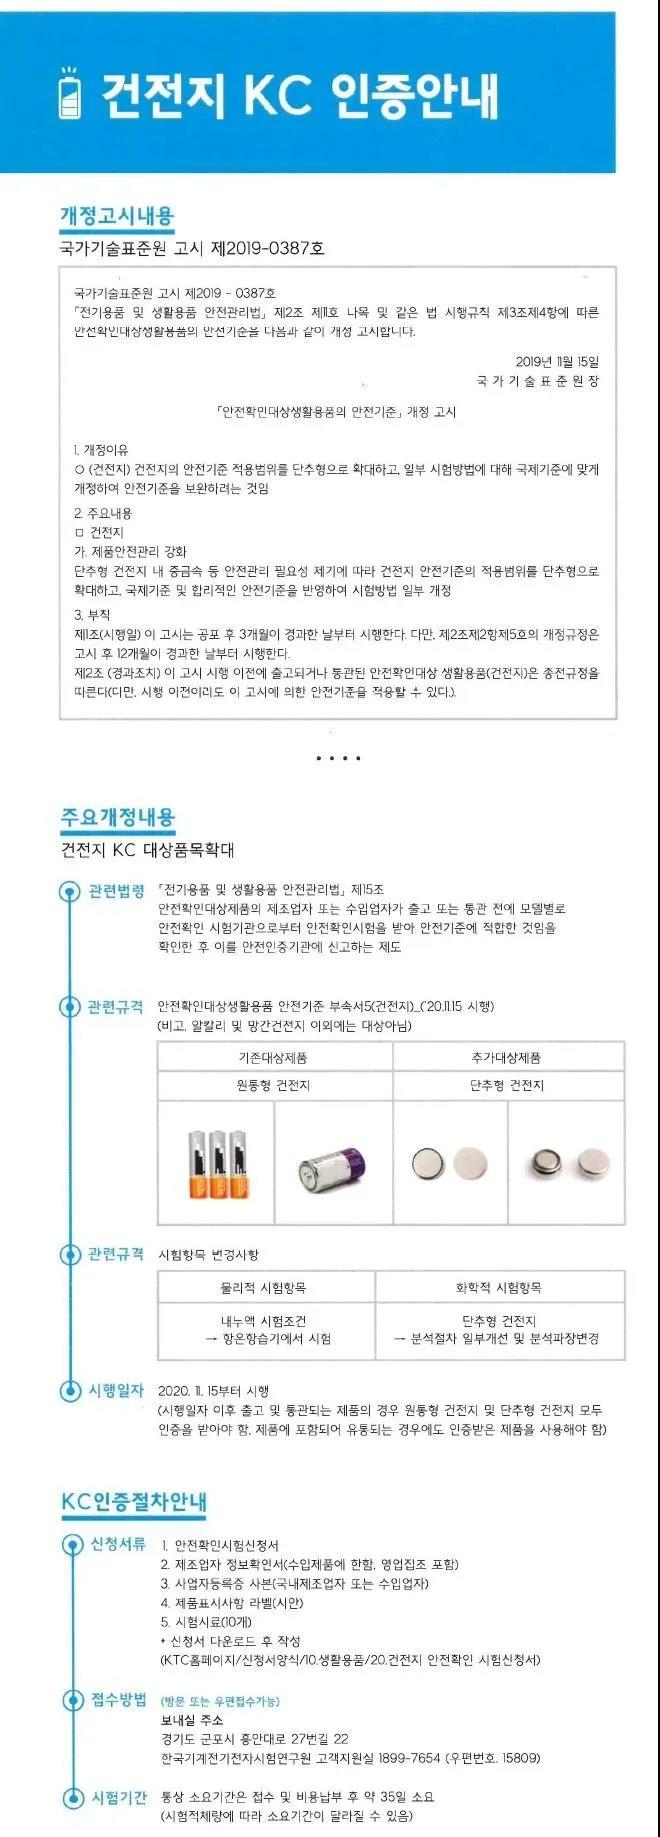 纽扣干电池将列入韩国KC认证管控范围，于今年11月生效-素材图片.jpg